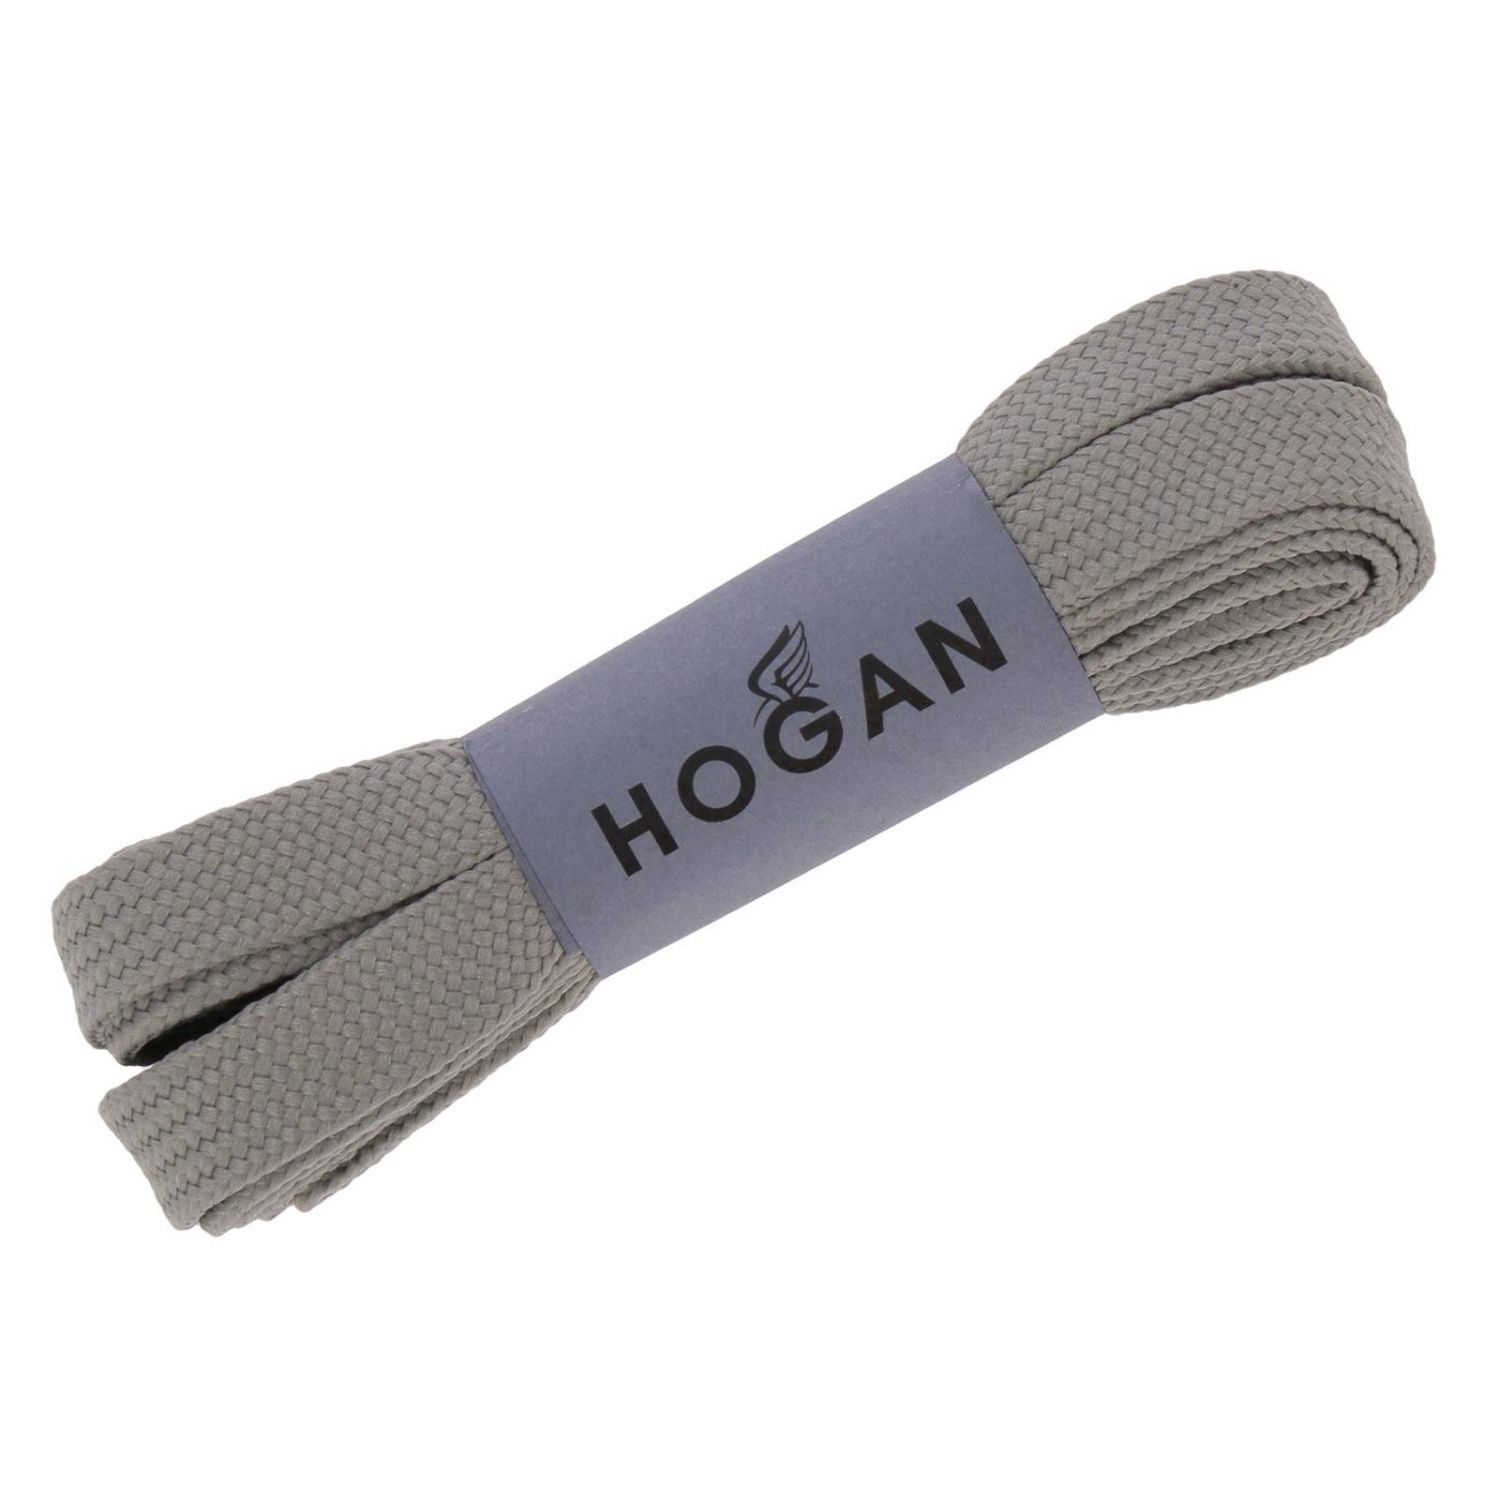 HOGAN: スニーカー レディース - シルバー | スニーカー Hogan HXW4350BN50 KP8 GIGLIO.COM